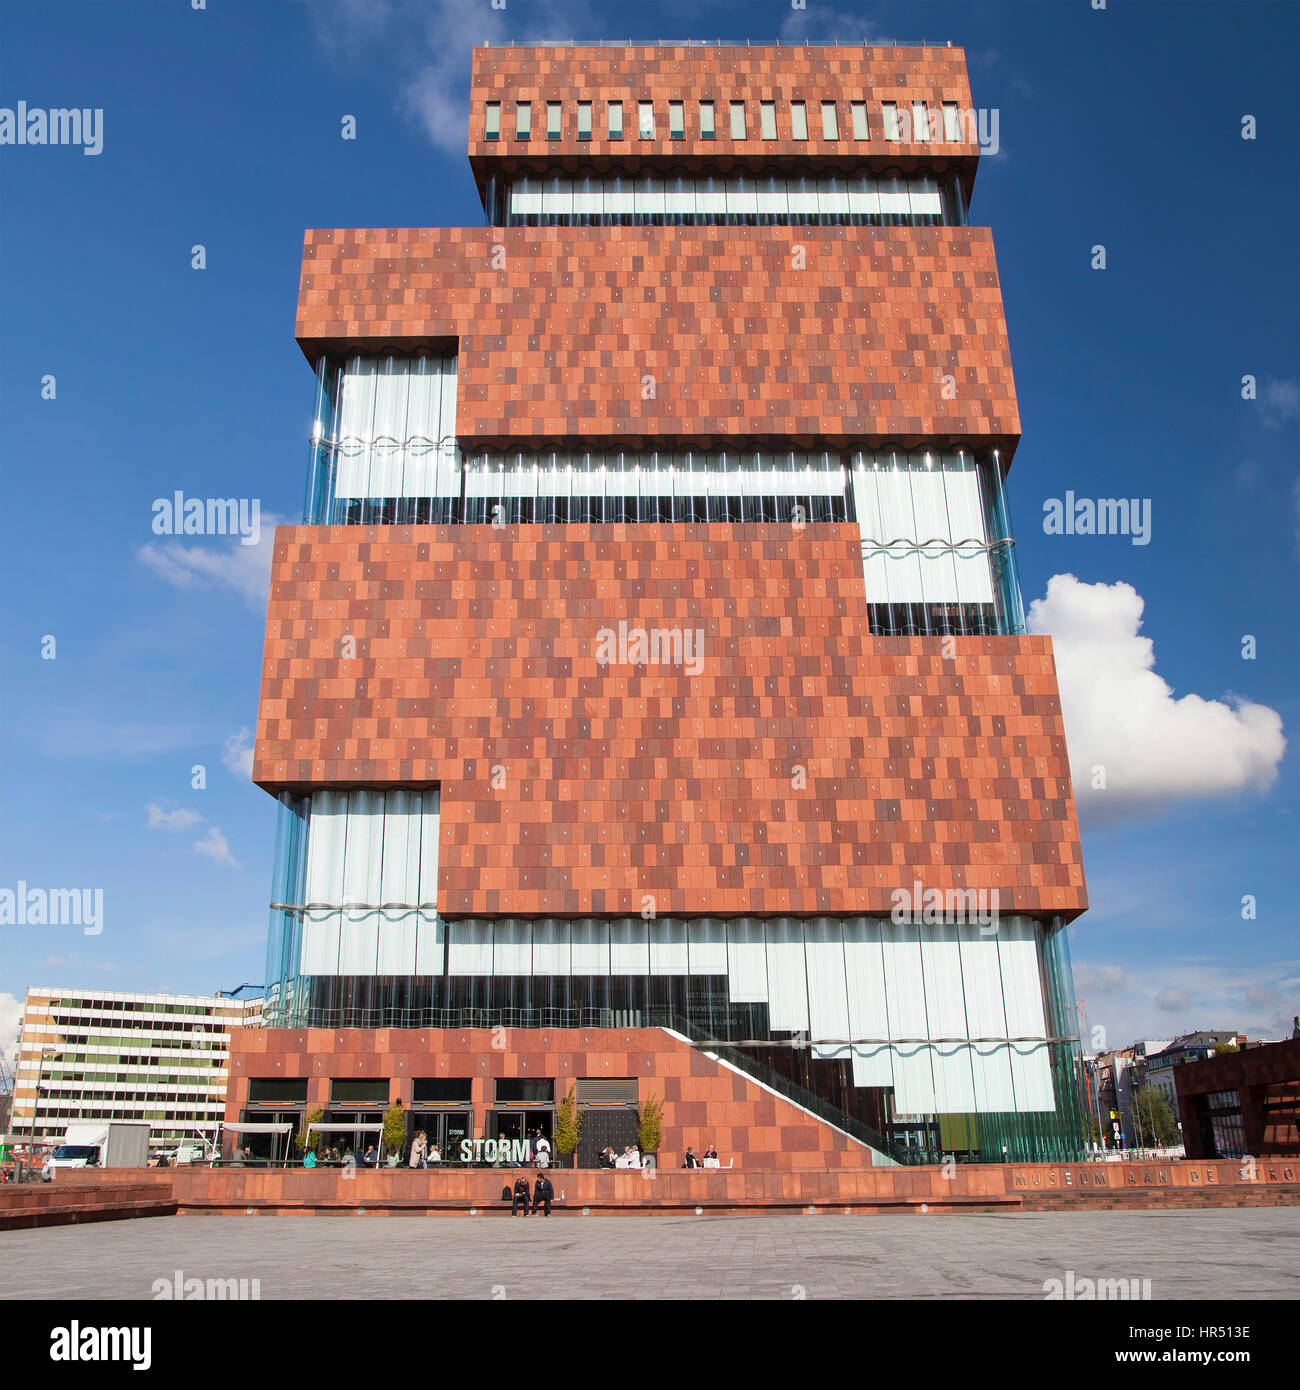 Antwerpen, Belgien - 10. Oktober 2016: Das Museum Aan de Stroom in Antwerpen, Belgien. Im Mai 2011 eröffnet, ist das größte Museum der Stadt. Stockfoto